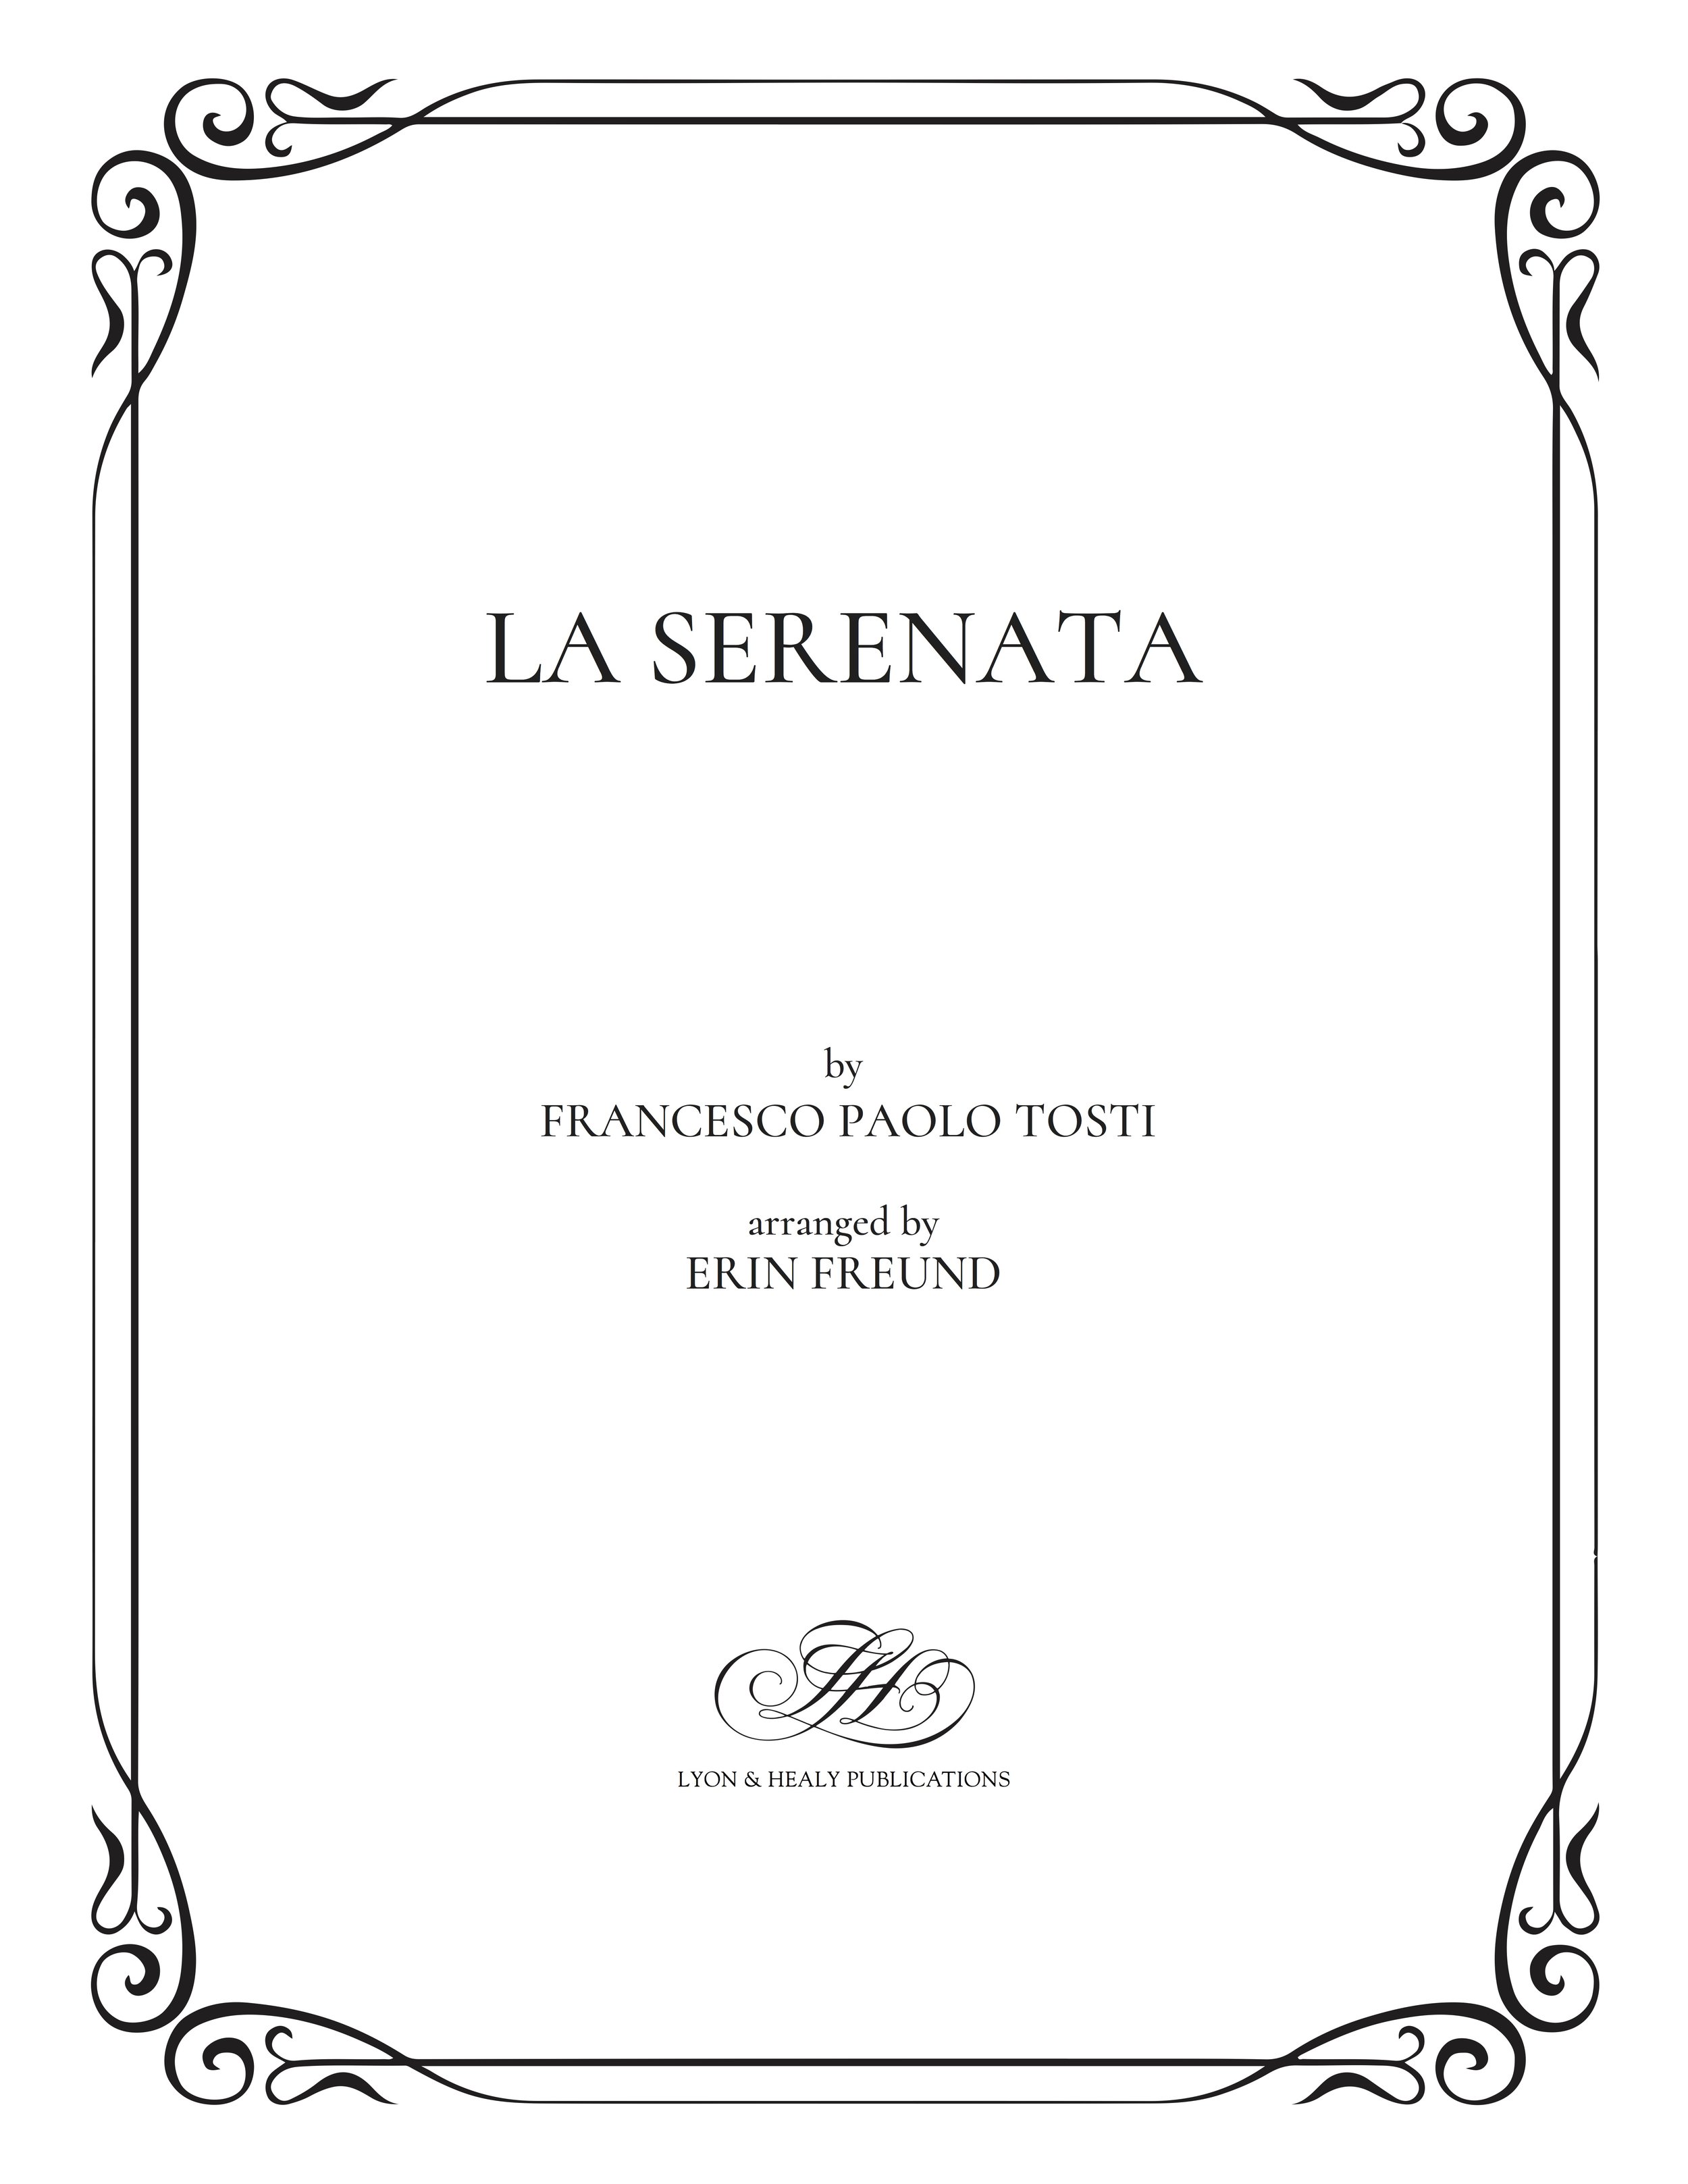 La Serenata - Tosti-Freund cover.jpg